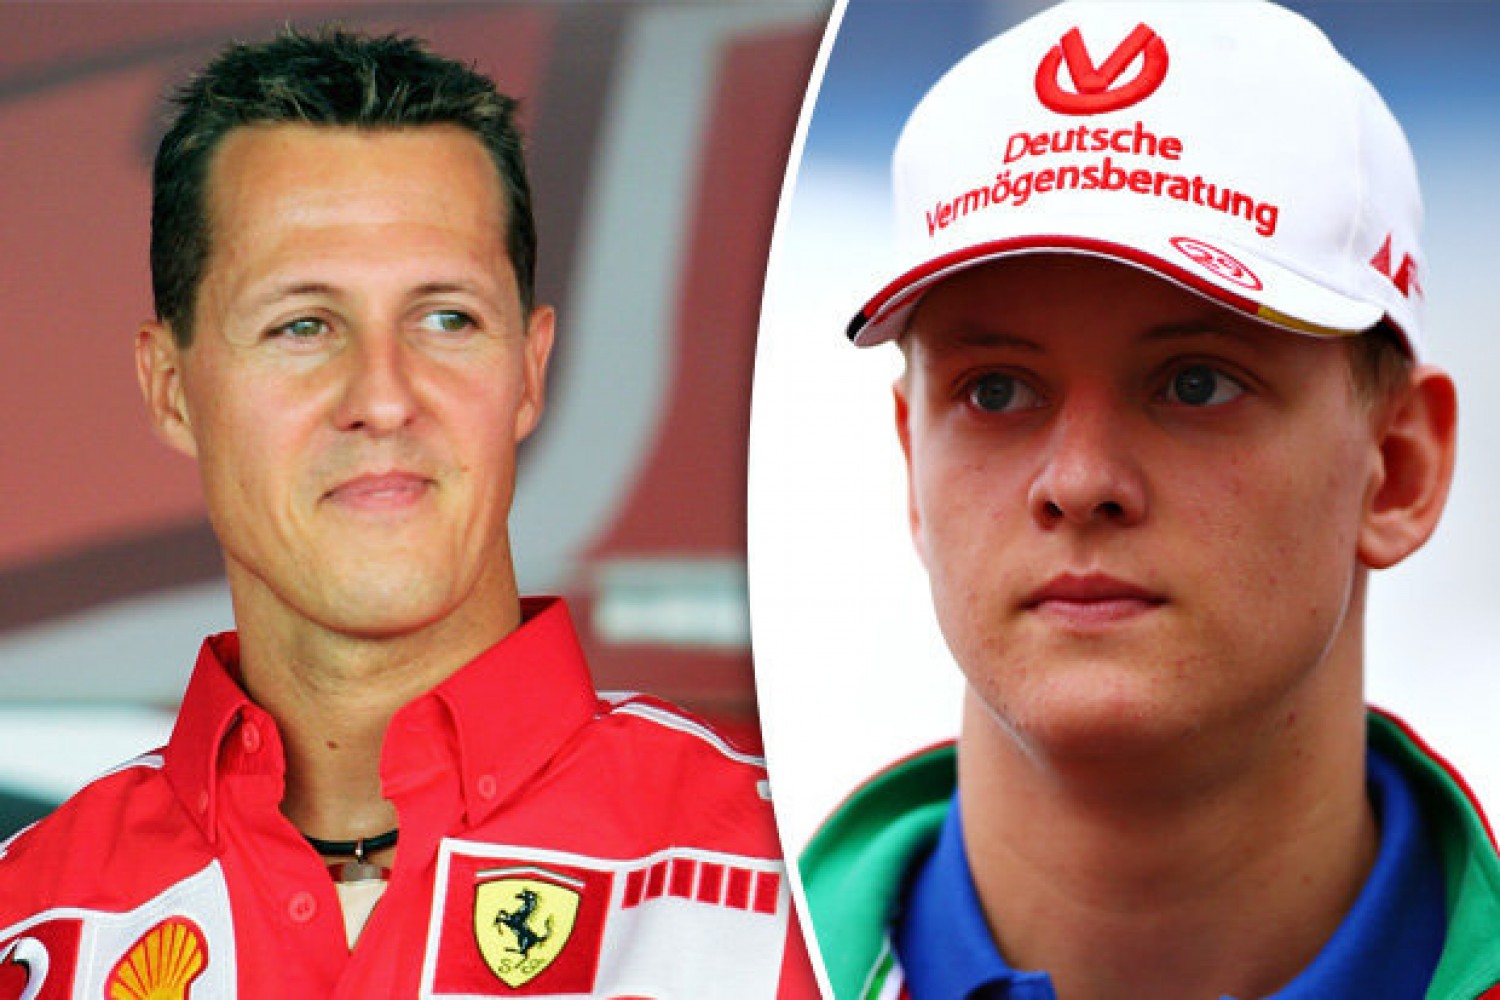 Hatalmas örömhír a rajongóknak: Ettől jobb hír nem is jöhetett volna Schumacher kapcsolatban, mióta ezt vártuk